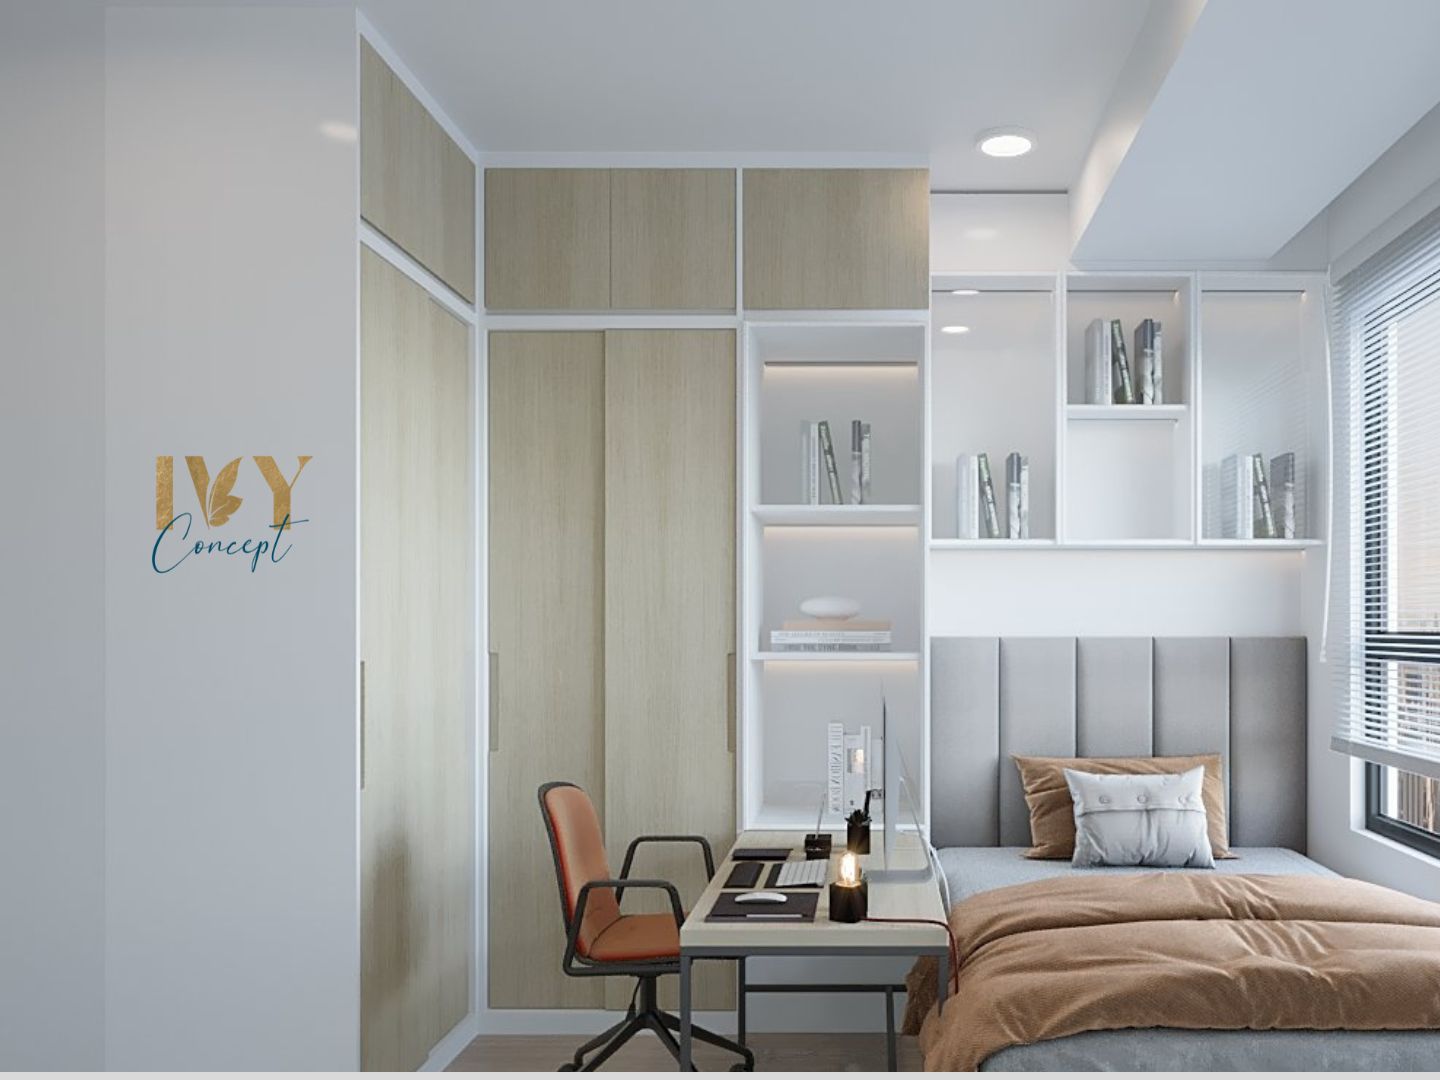 Phòng ngủ, phòng làm việc, phong cách Hiện đại Modern, thiết kế concept nội thất, căn hộ River Panorama